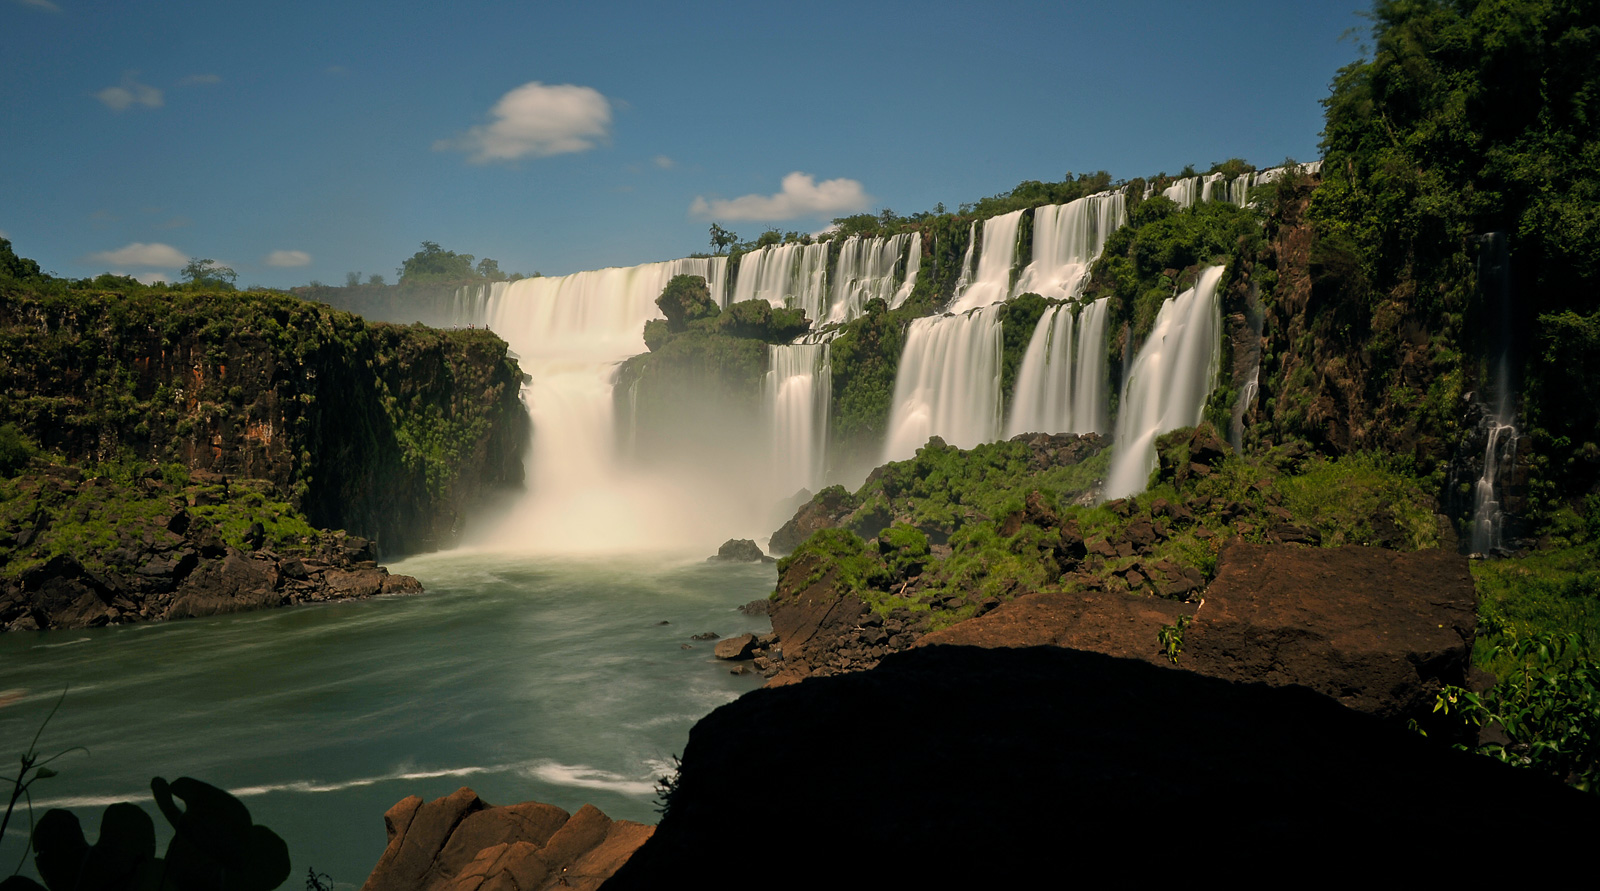 Cataratas del Iguazu [28 mm, 13.0 Sek. bei f / 22, ISO 200]